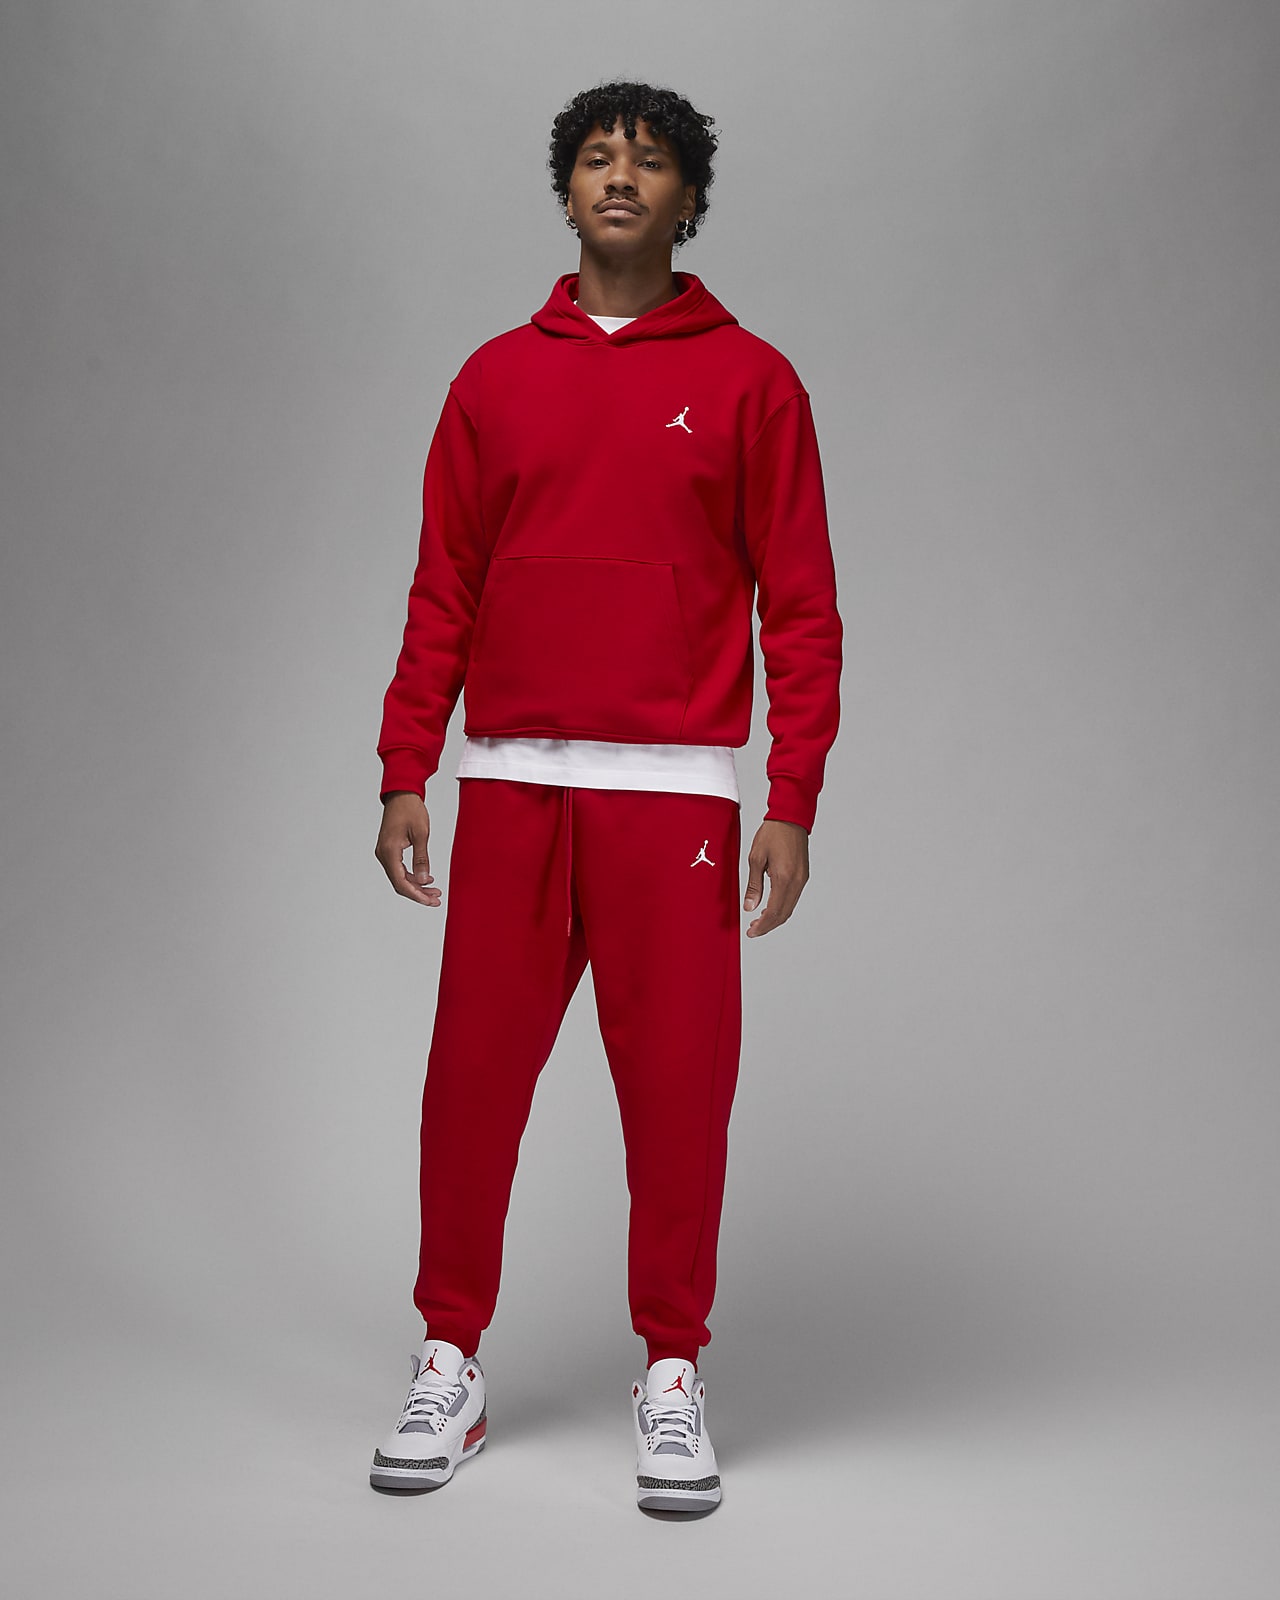 Las mejores ofertas en Sudaderas de Nike Jordan para hombres